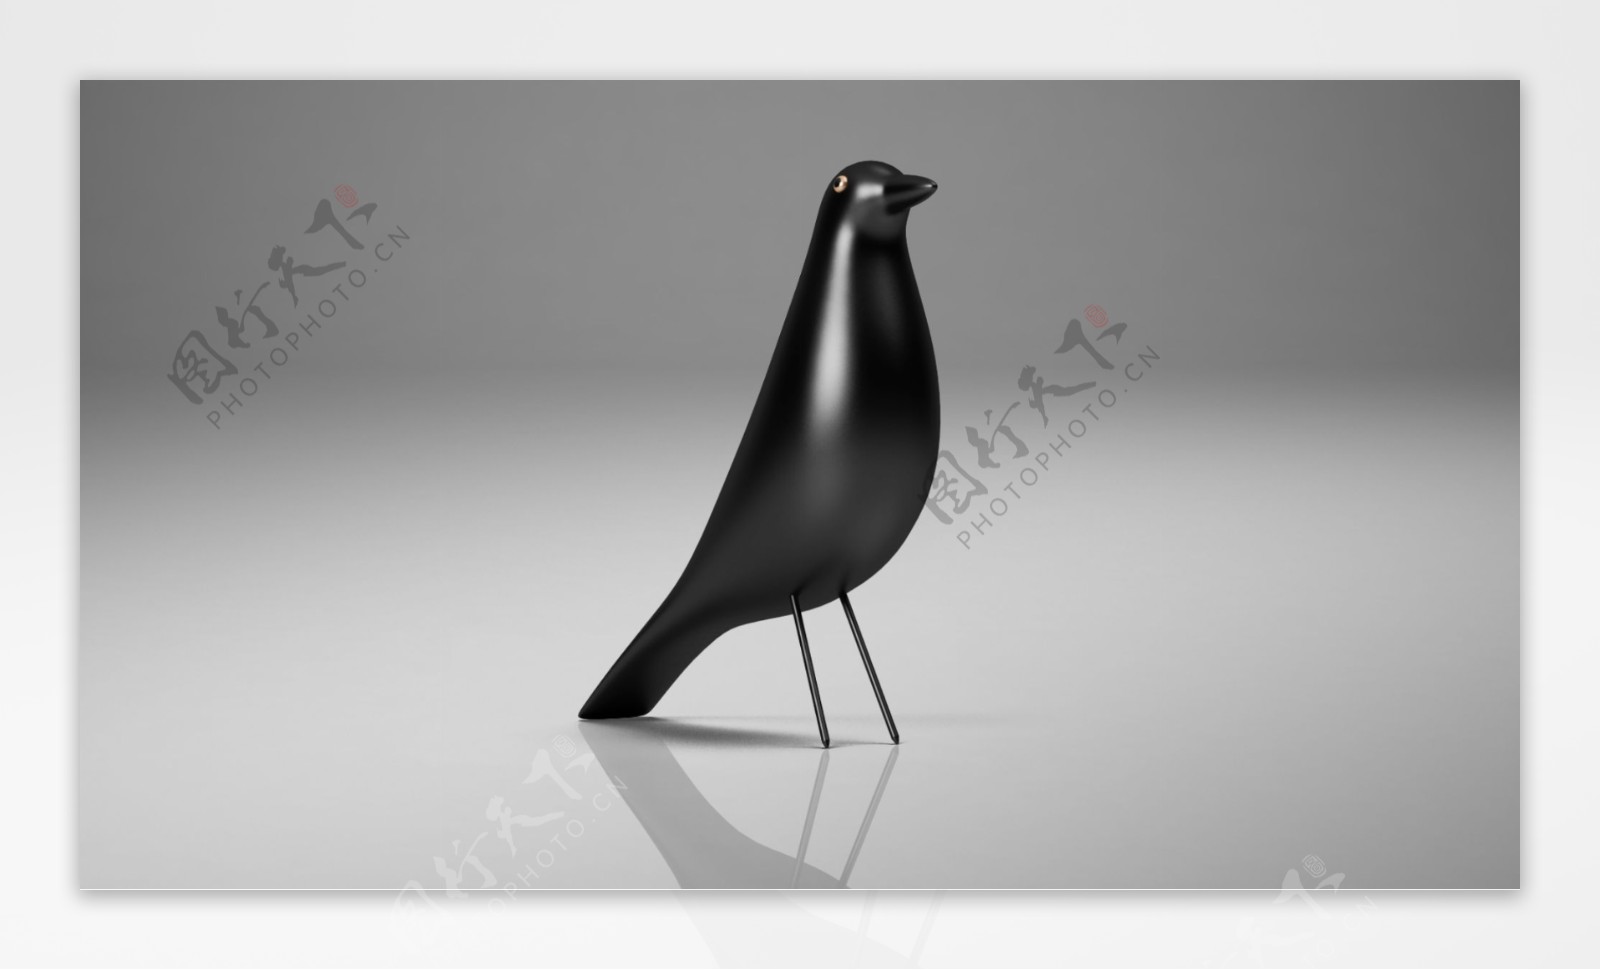 黑色小鸟模型设计